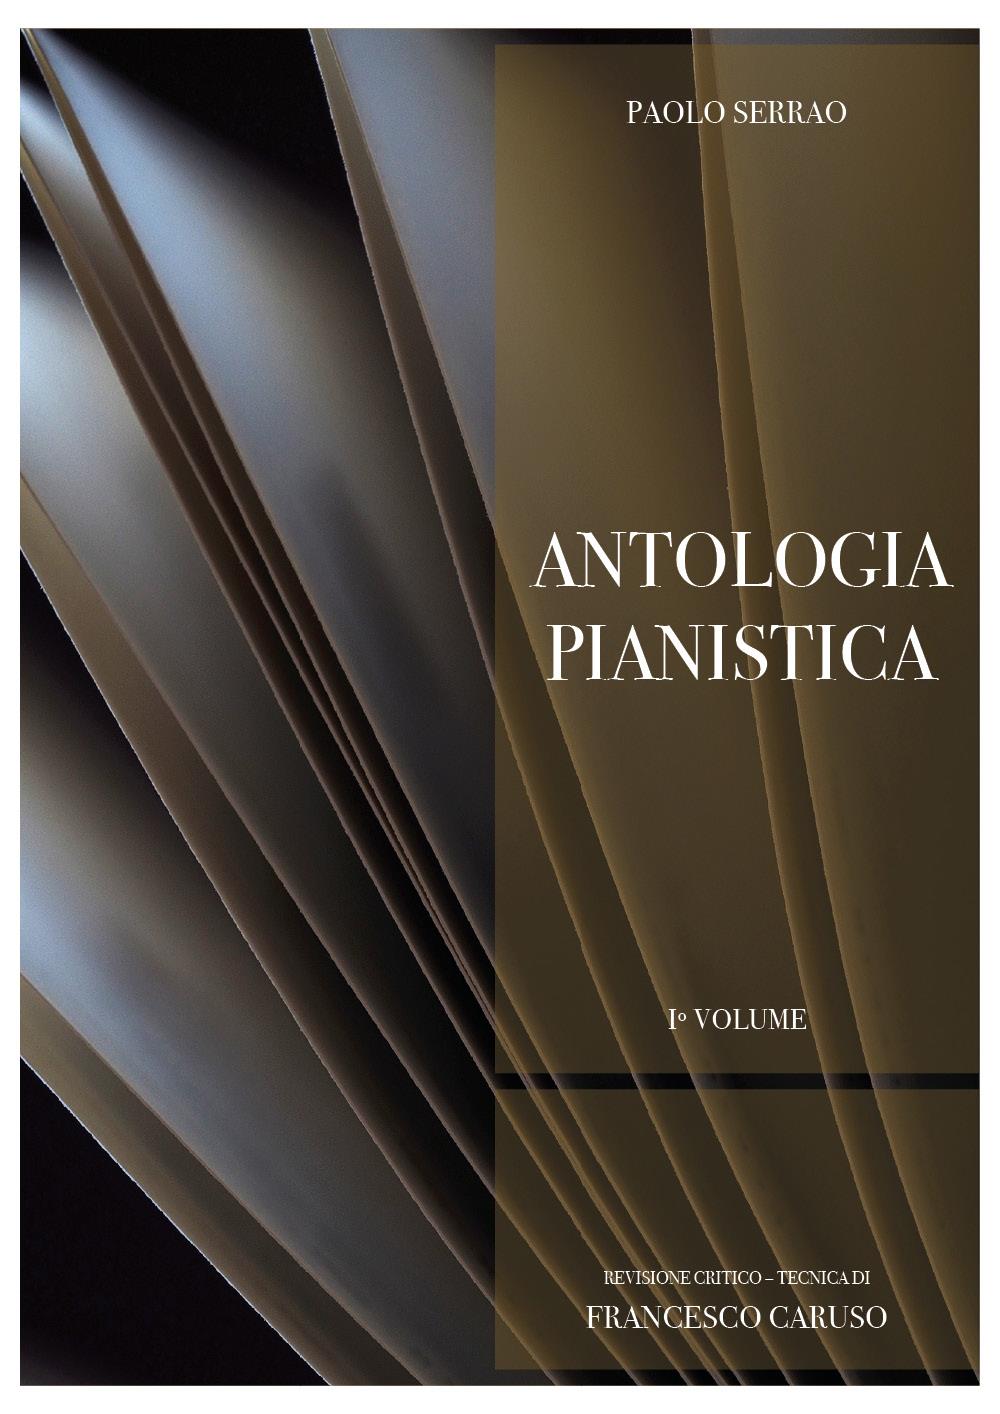 P. Serrao - Antologia pianistica - 1º Volume. Revisione critico-tecnica di Francesco Caruso